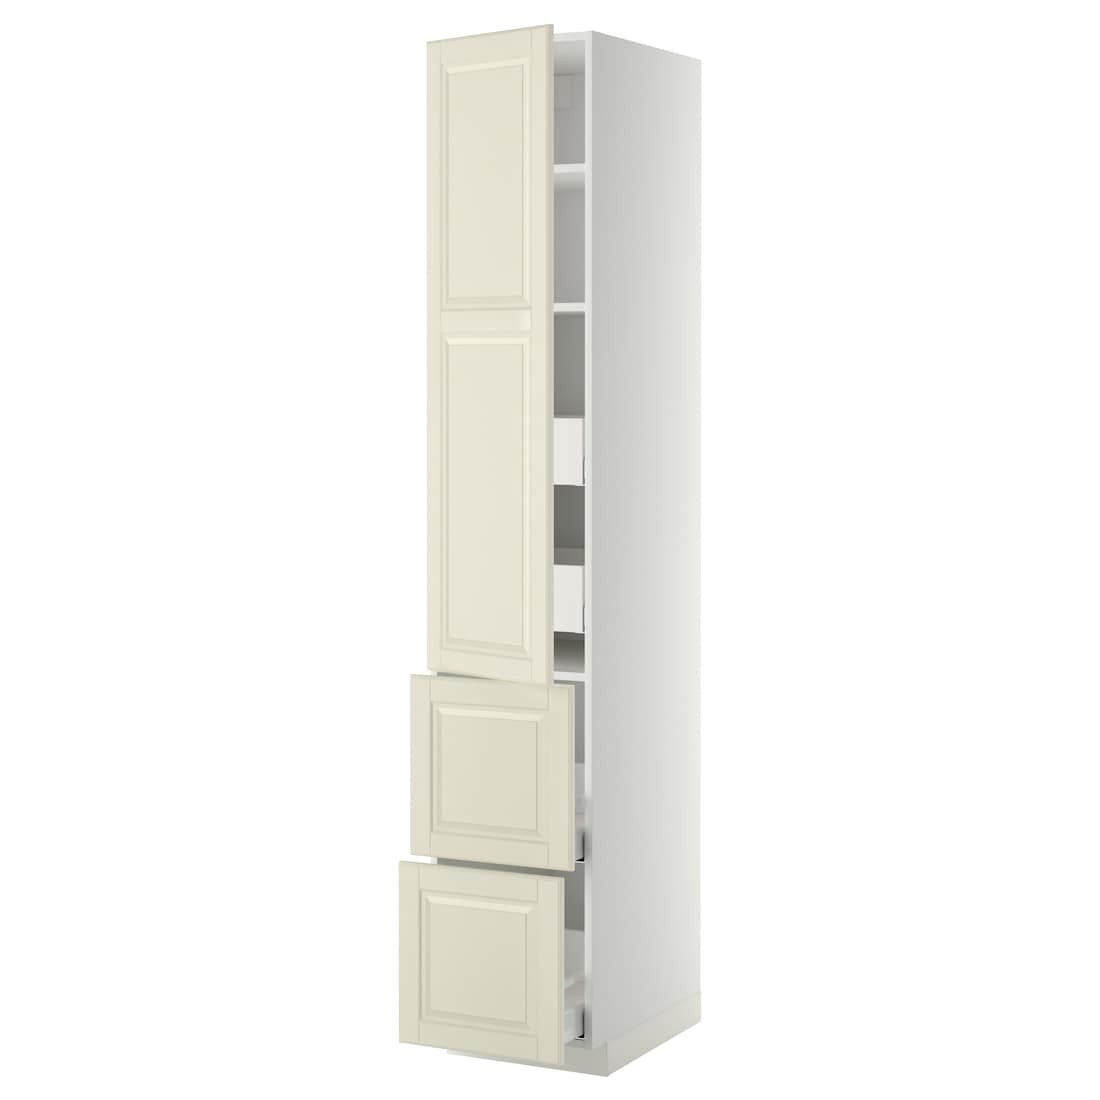 IKEA METOD МЕТОД / MAXIMERA МАКСИМЕРА Высокий шкаф с полками / ящиками, белый / Bodbyn кремовый, 40x60x220 см 99366887 993.668.87